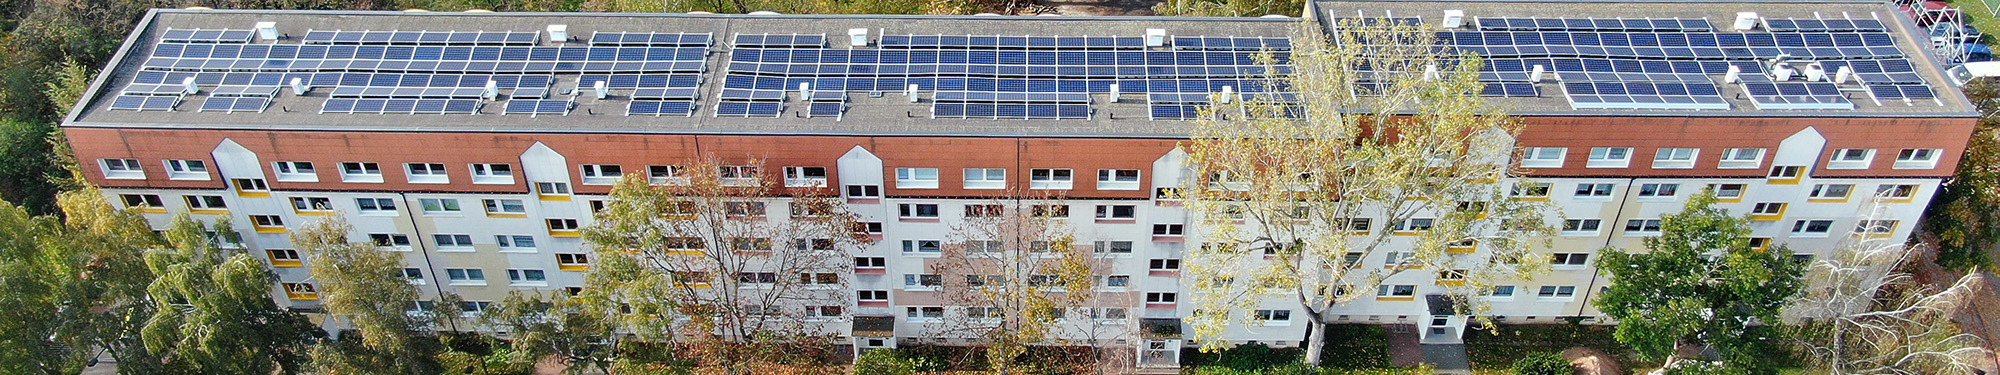 Mieterstrom Photovoltaik Anlage auf einem Dach Bernburg